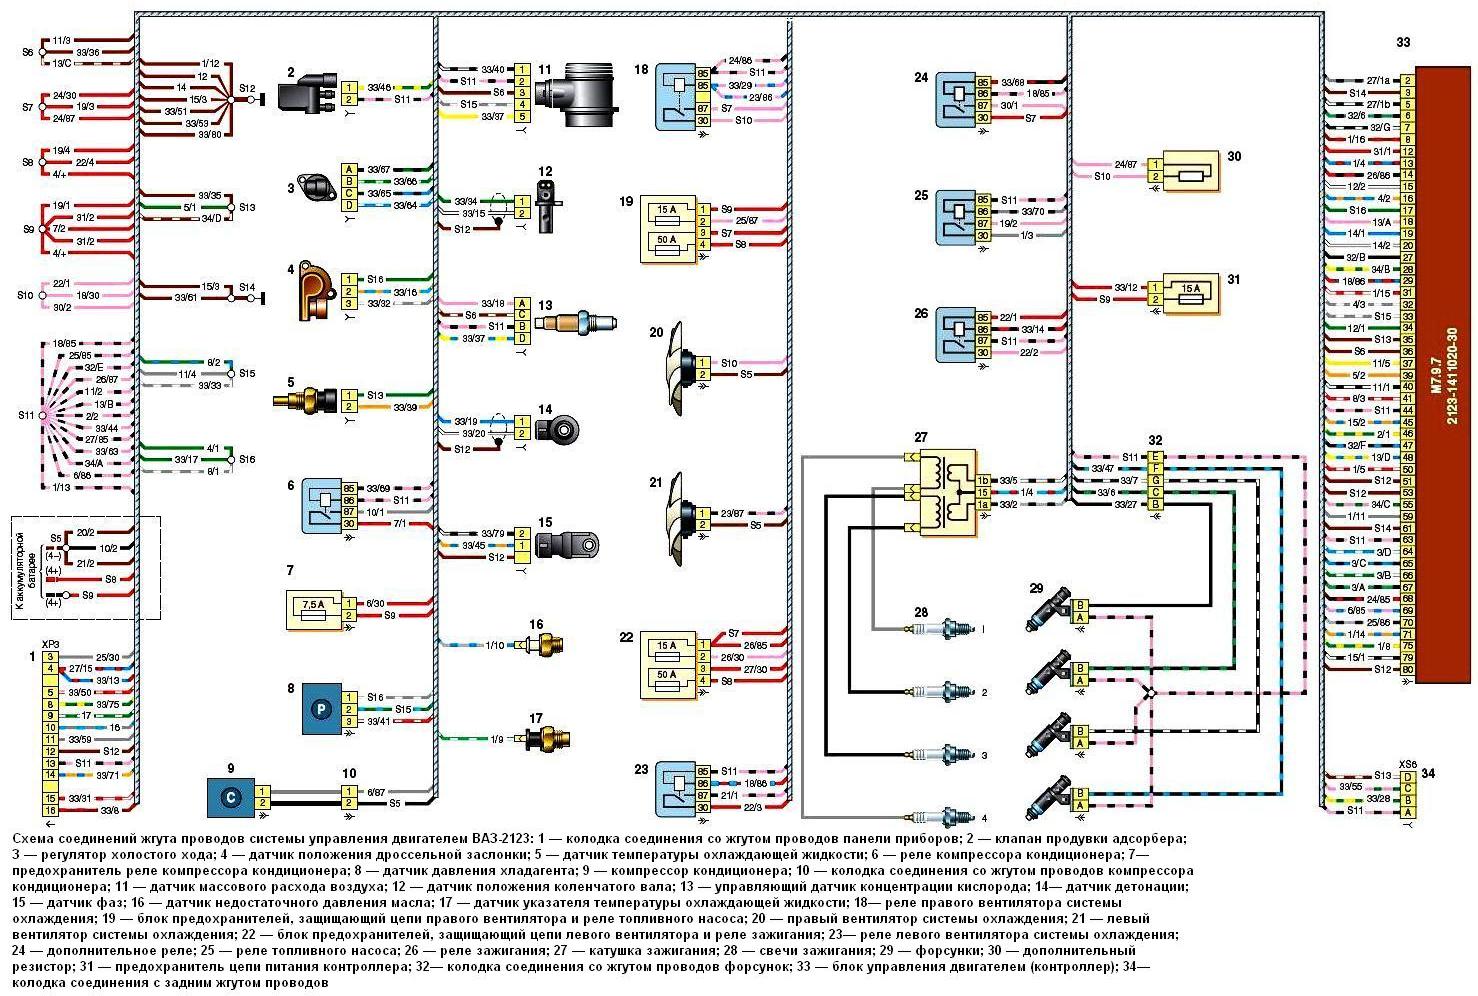 Схема соединений жгута проводов системы управления двигателем ВАЗ-2123